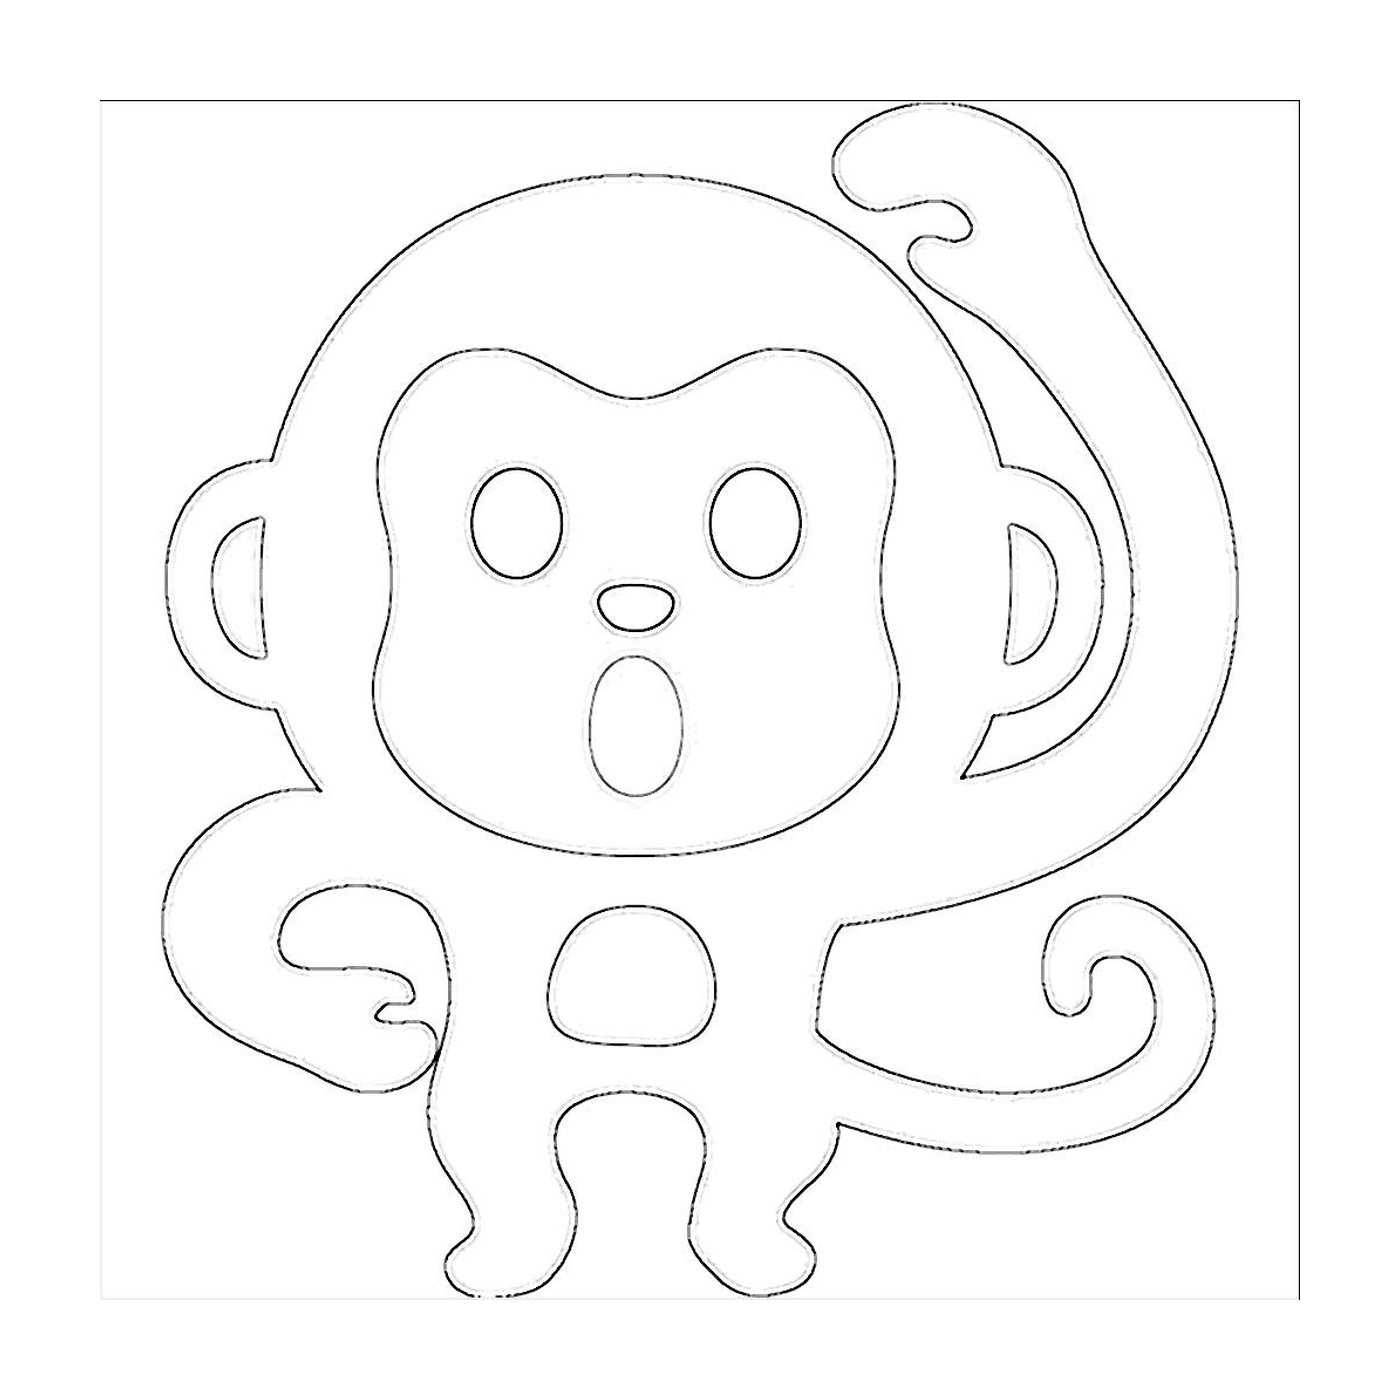   Un singe dessiné 